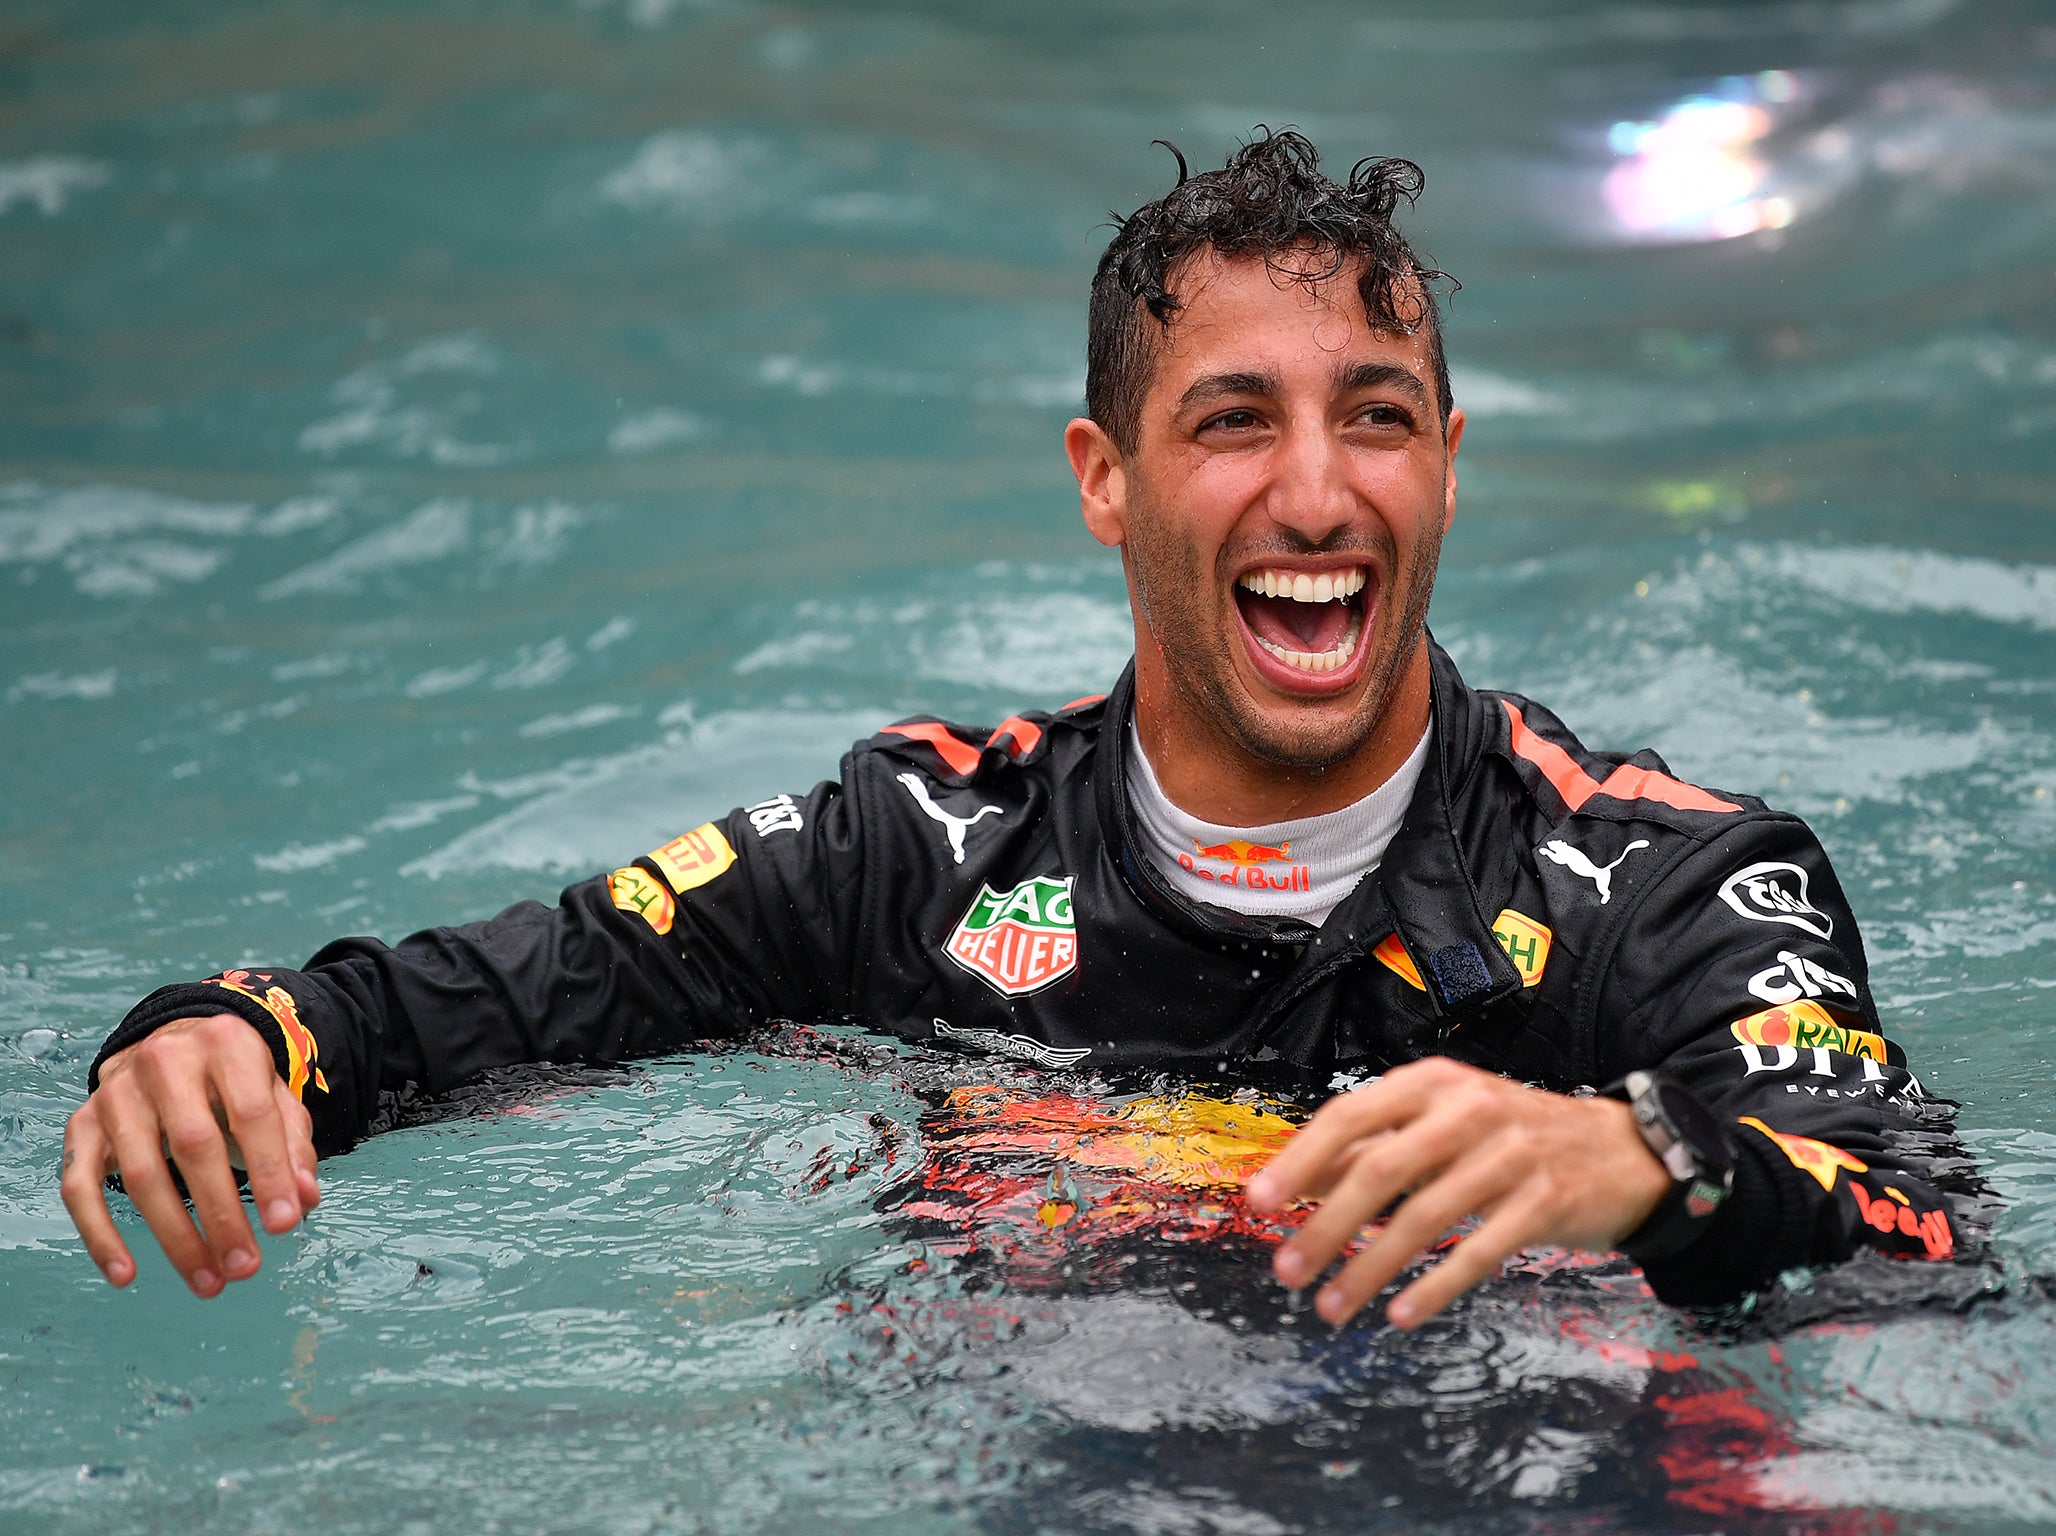 The Aussie took an impromptu dip to celebrates his Grand Prix win